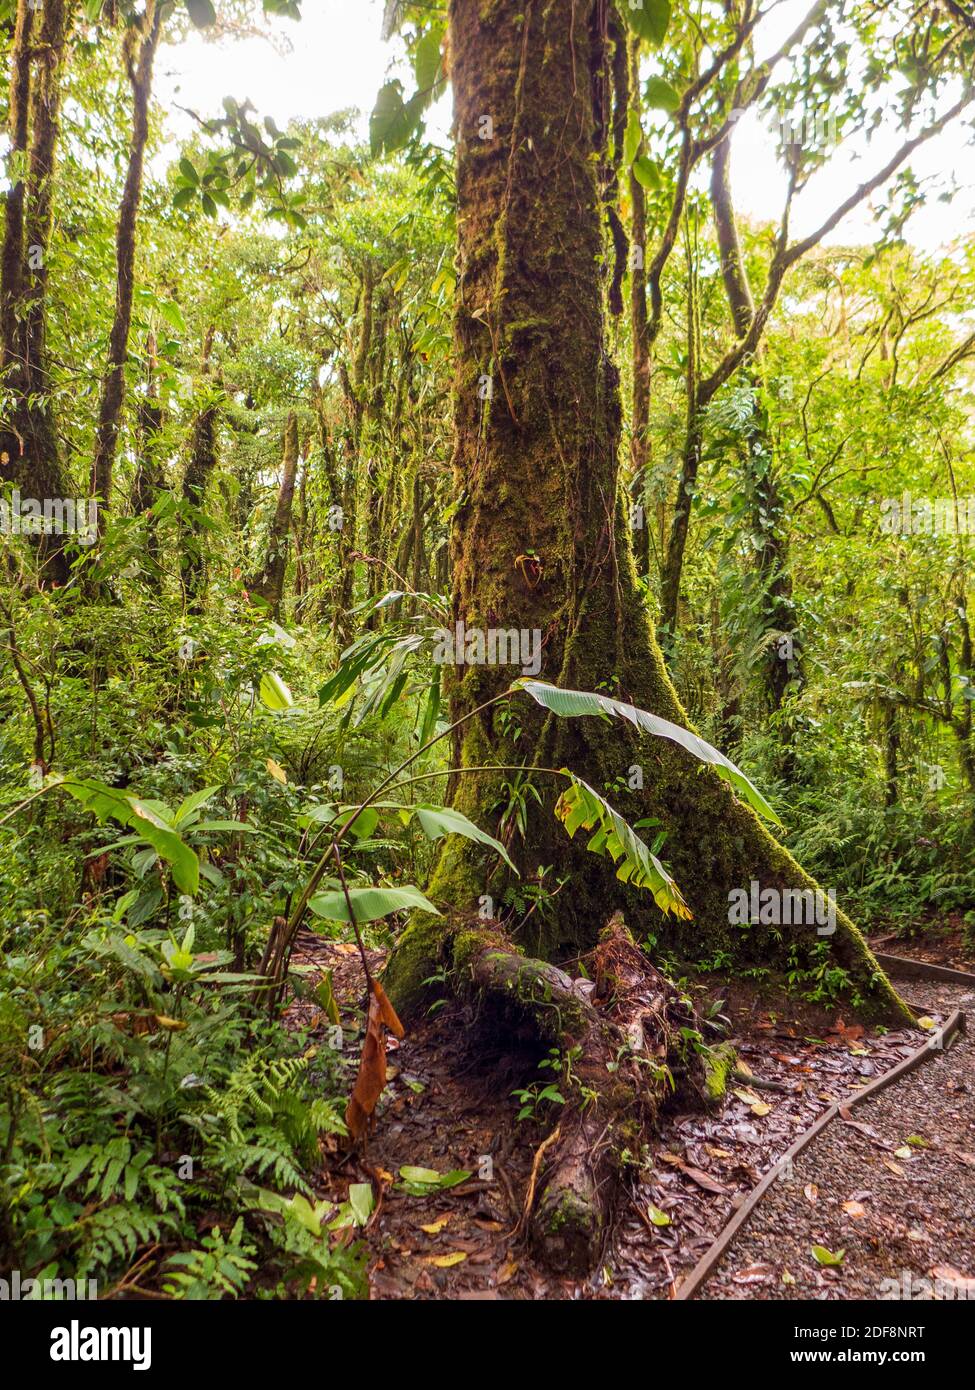 Wanderung durch den Regenwald in Costa Rica. Die Bäume streben gegen das Licht und sind sehr groß geworden. Epiphyten überwachsen jeden Baum. Stockfoto